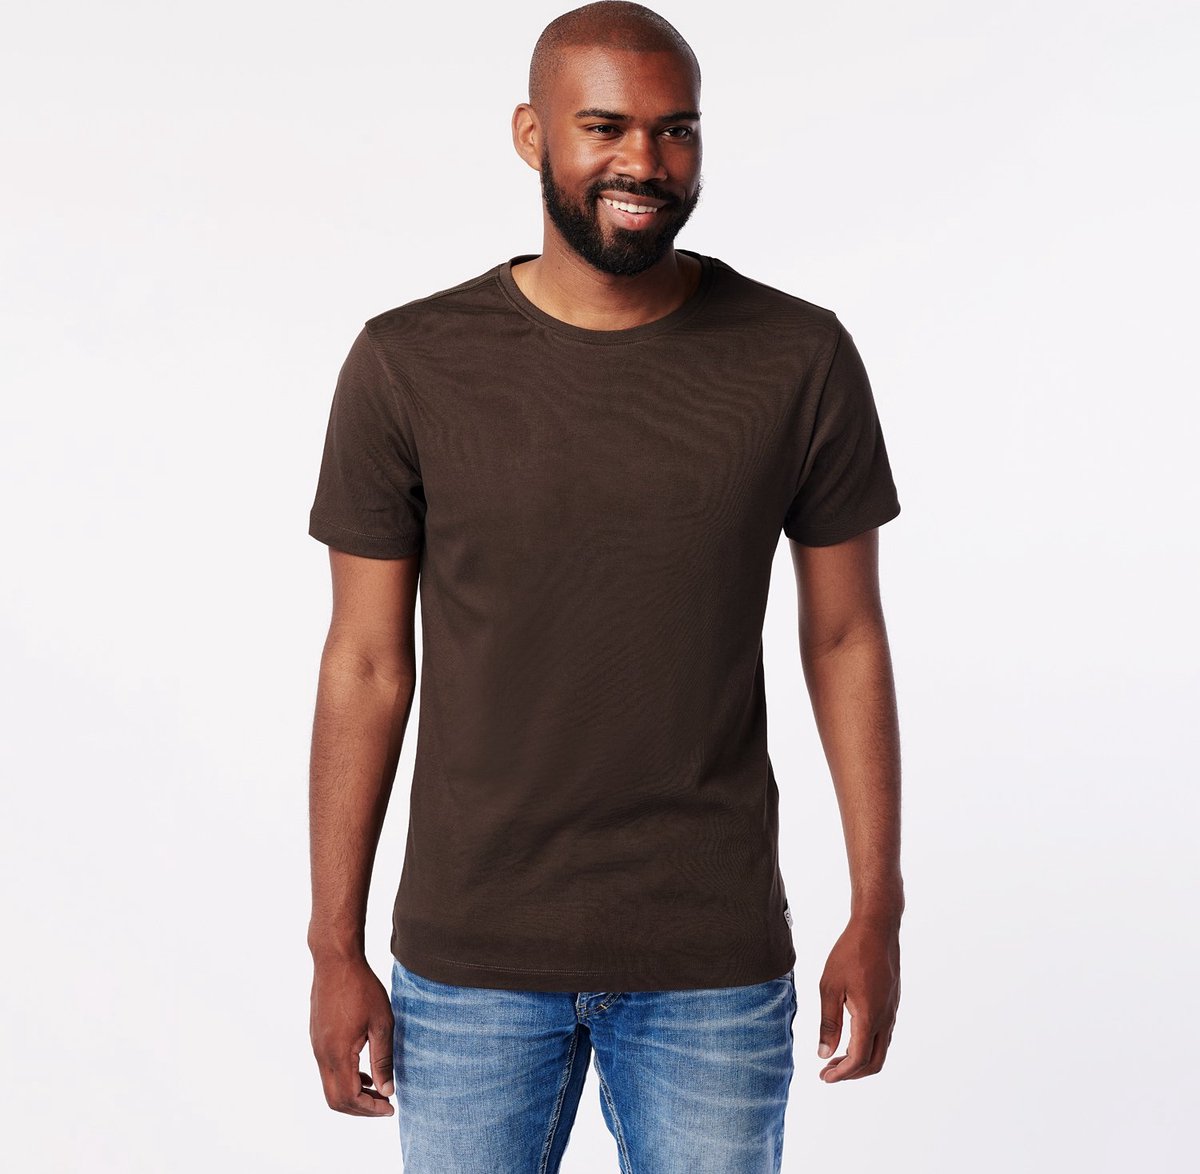 SKOT Duurzaam T-shirt - Soil - Bruin - Maat XL